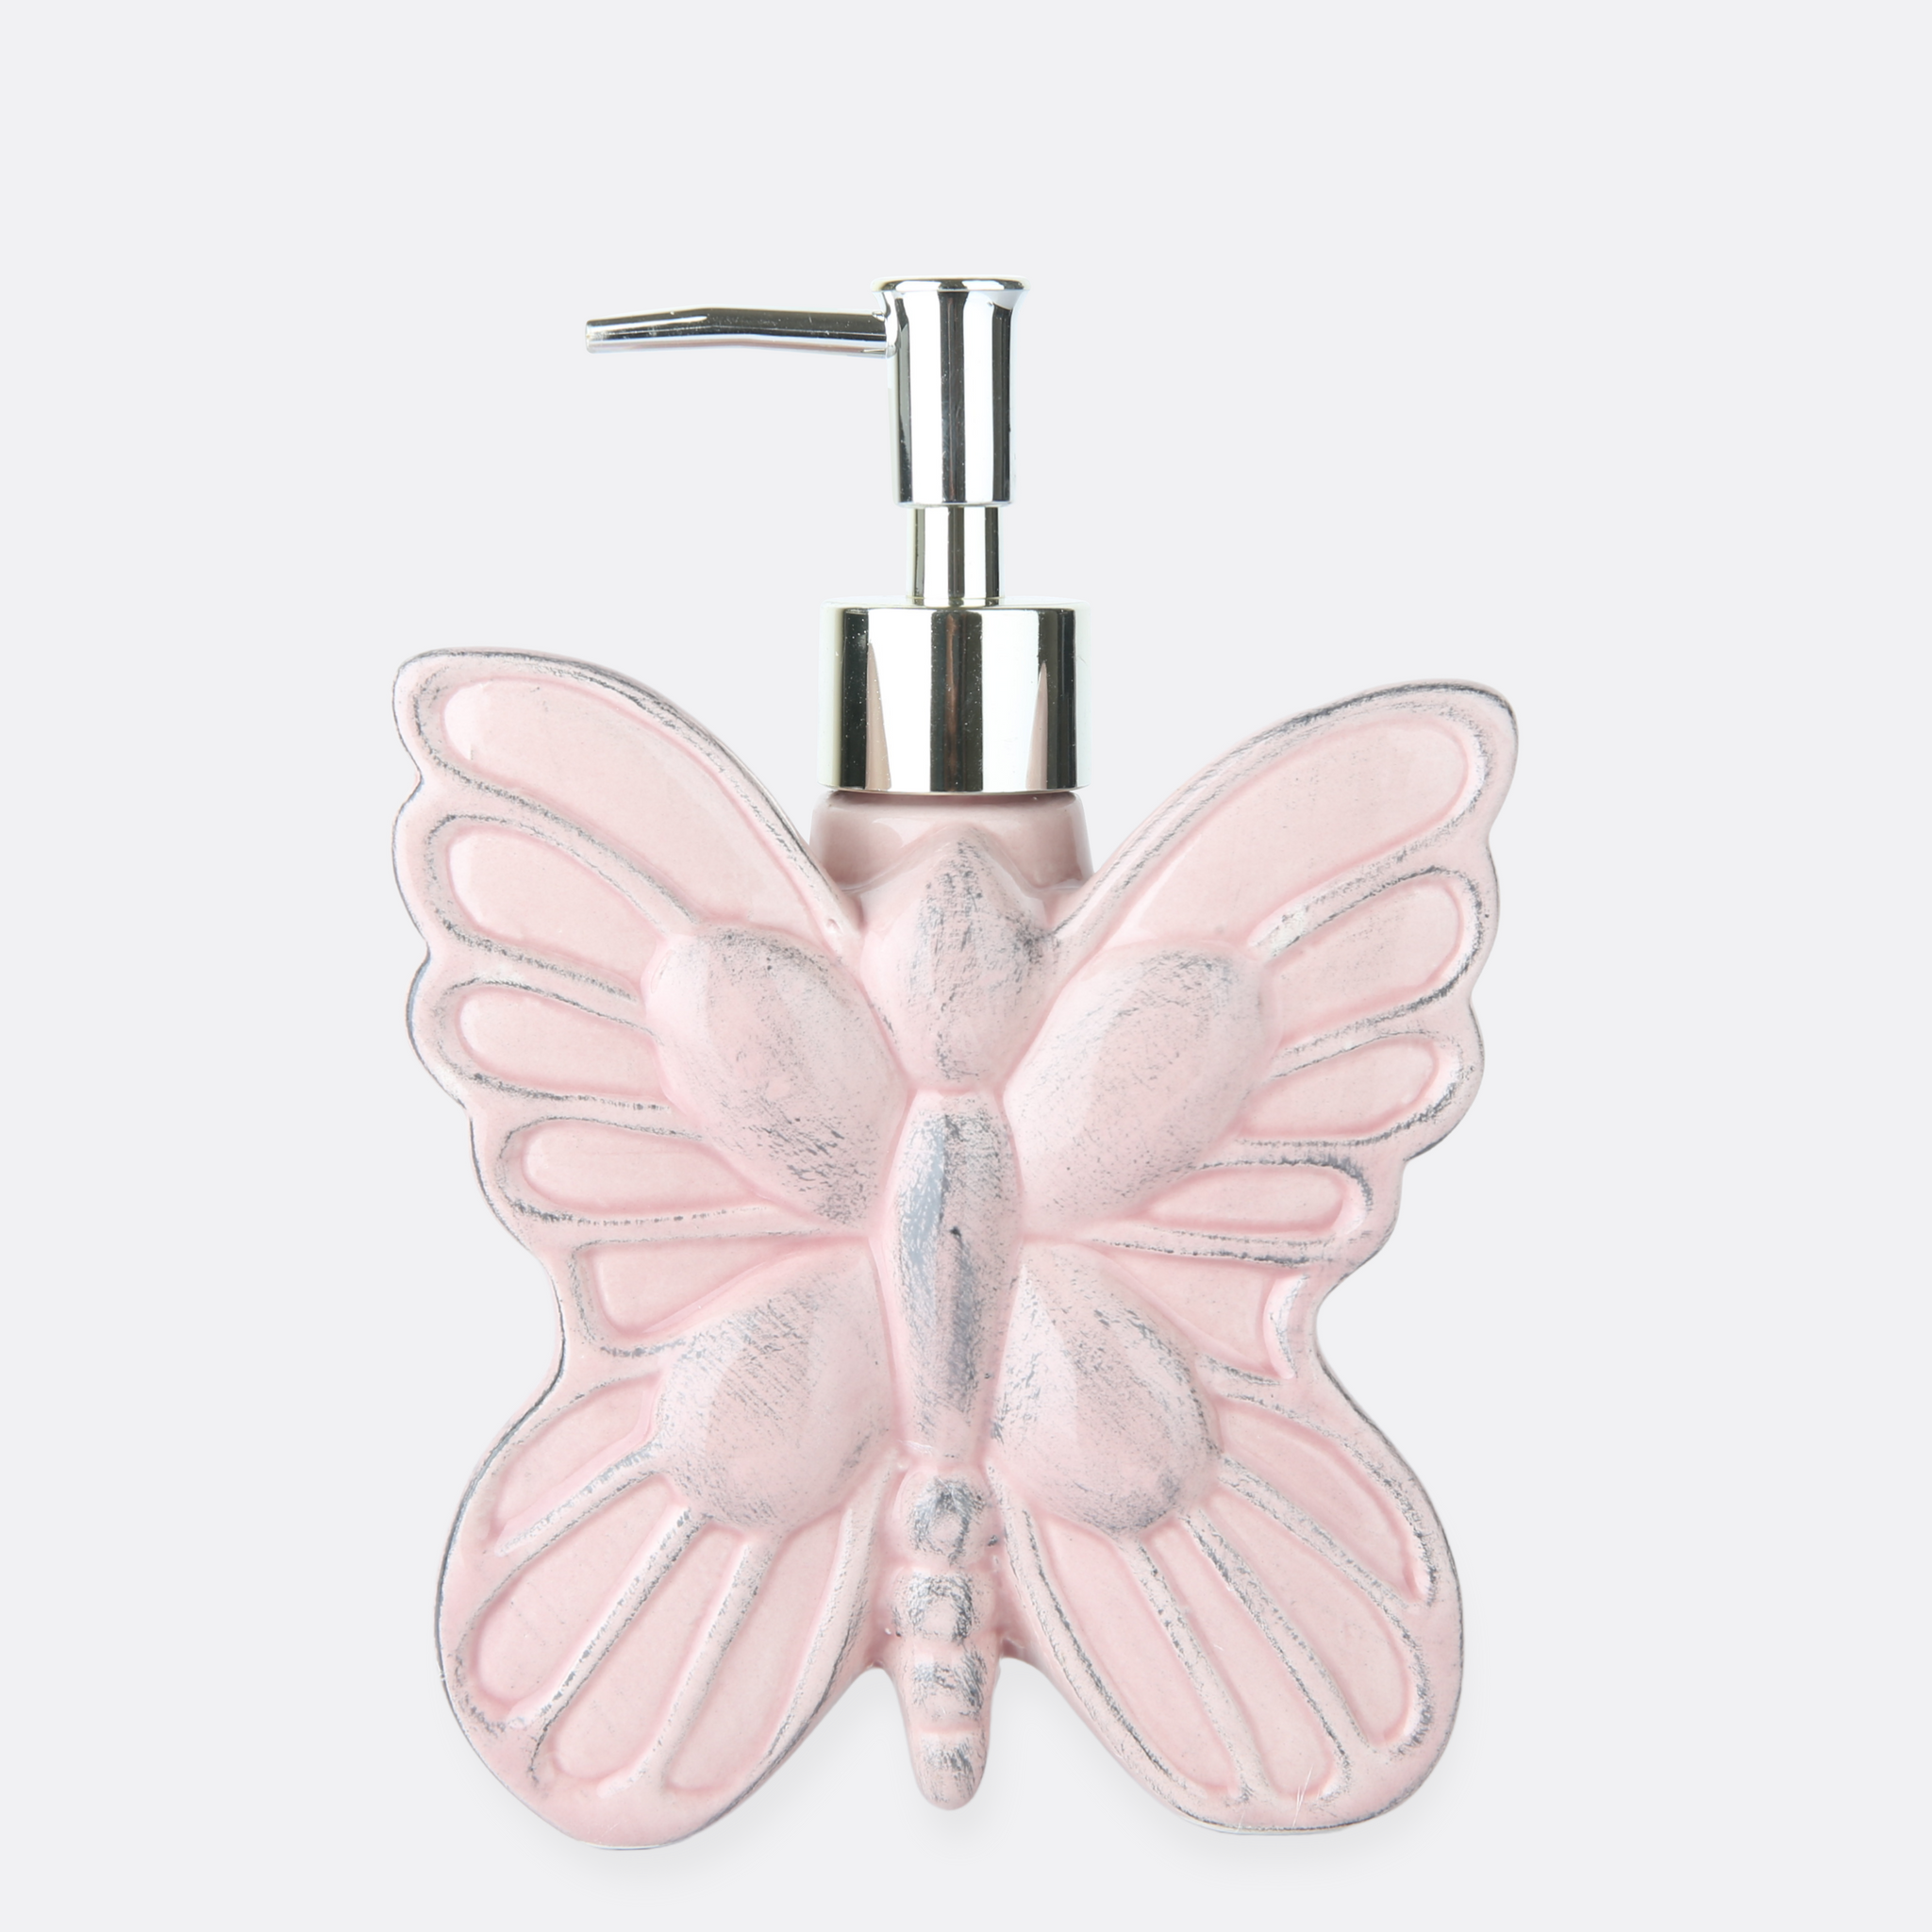 Butterfly Design Soap Dispenser